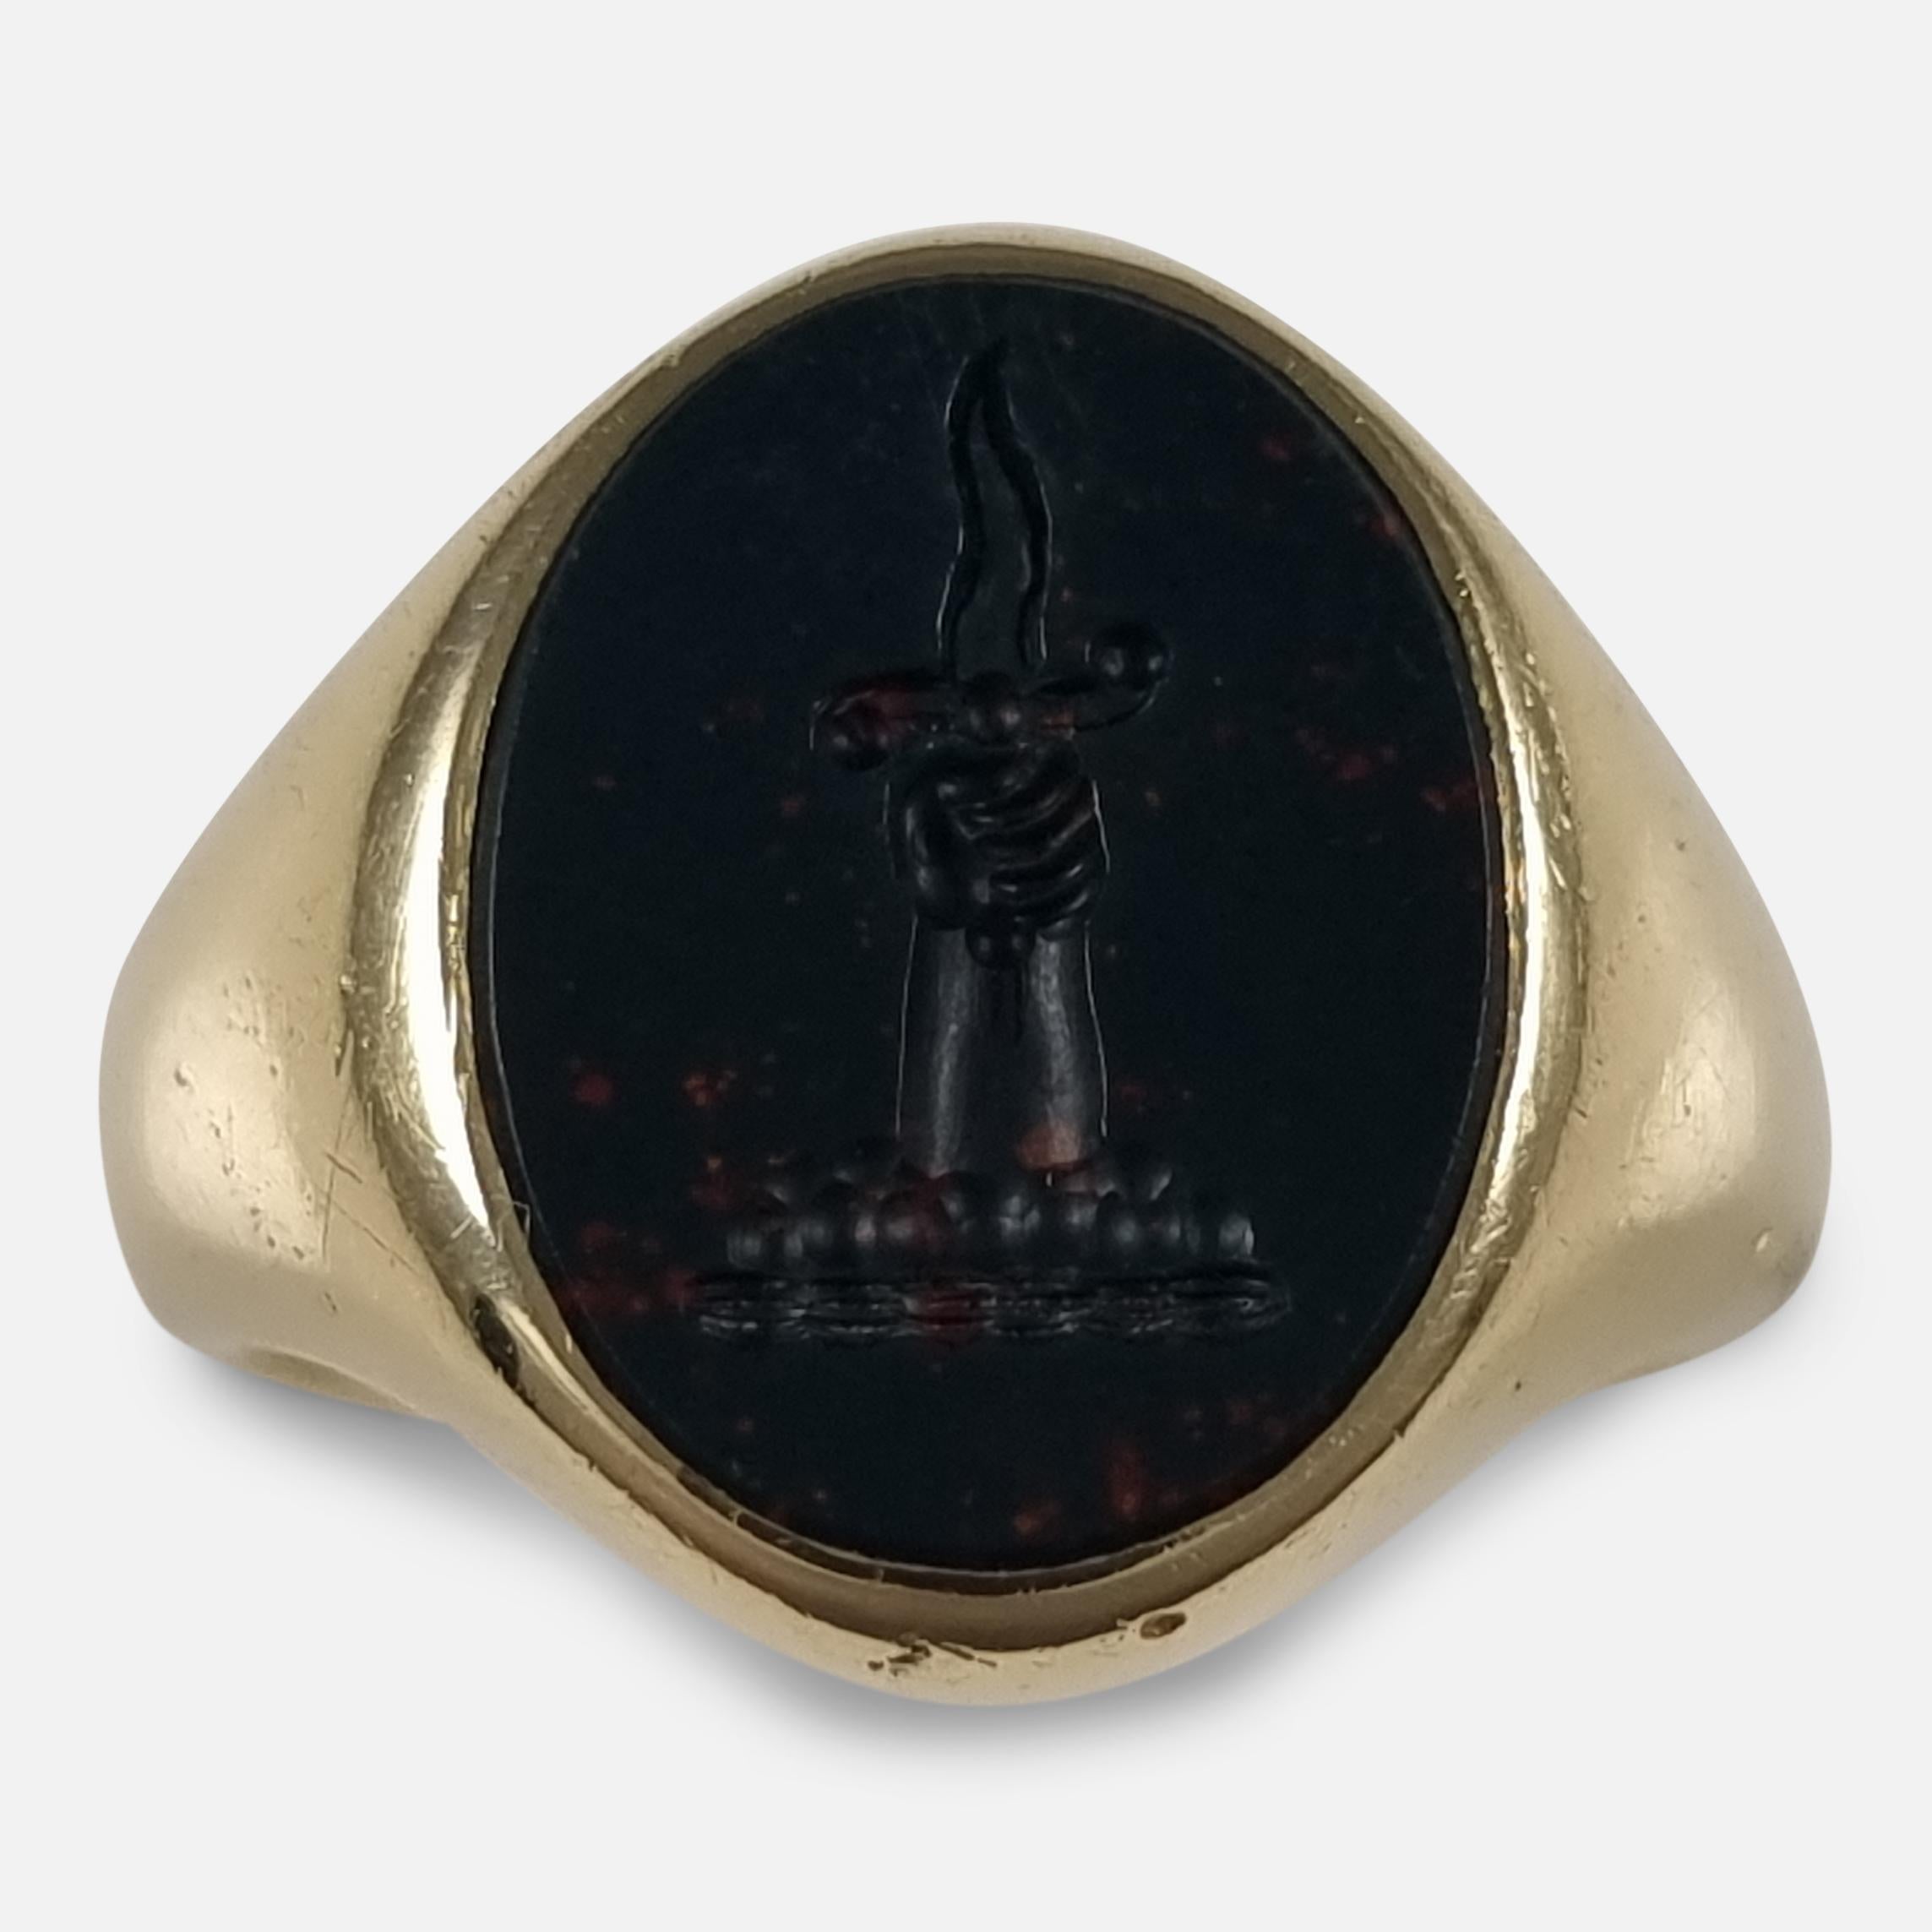 Dieser Siegelring aus 18-karätigem Gelbgold trägt einen Blutstein in einem ovalen Kopf, in den ein Familienwappen eingraviert ist, das eine Hand zeigt, die sich aus einer Wolke erhebt und eine gewellte Klinge ergreift.

Dieses Wappen wird mit den